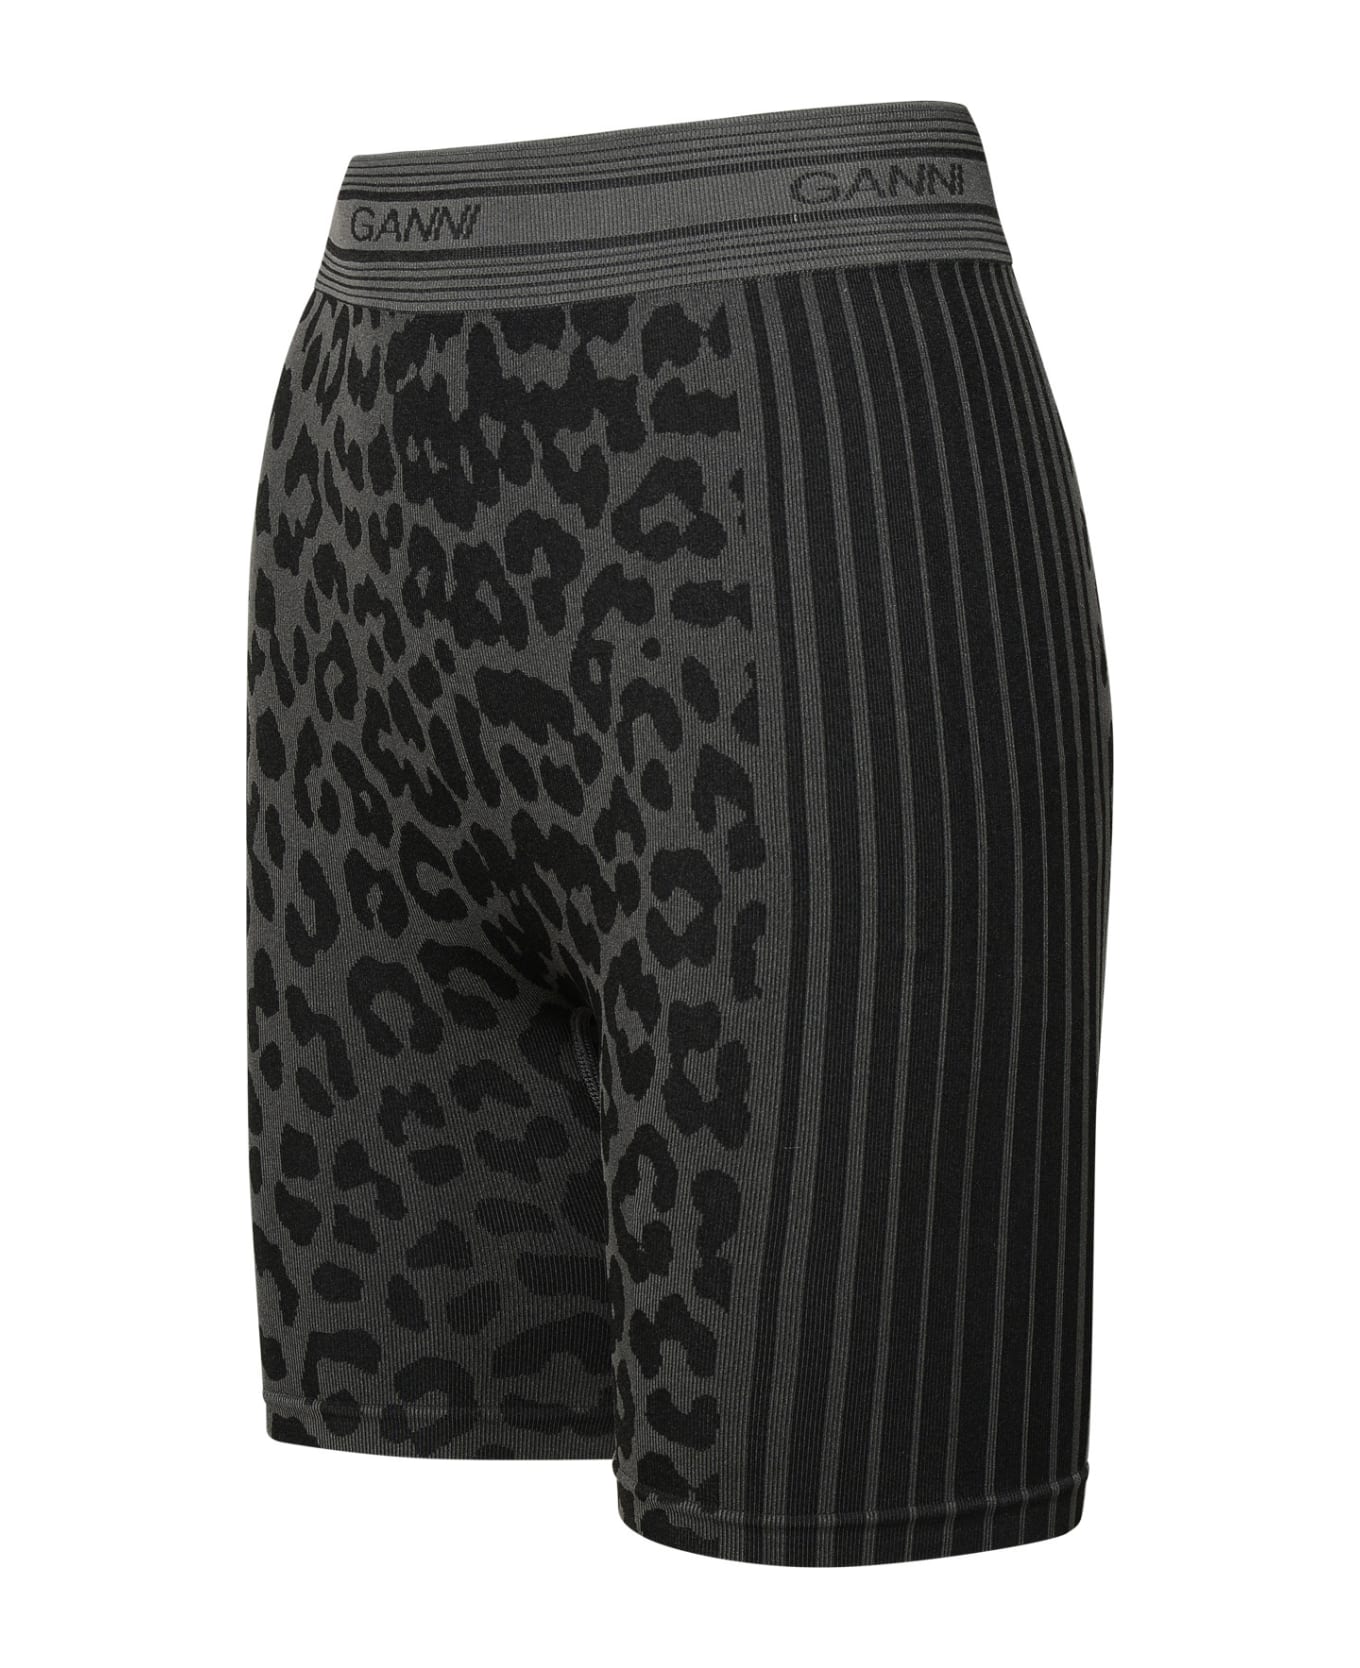 Ganni Black Recycled Nylon Blend Shorts - Black ショートパンツ